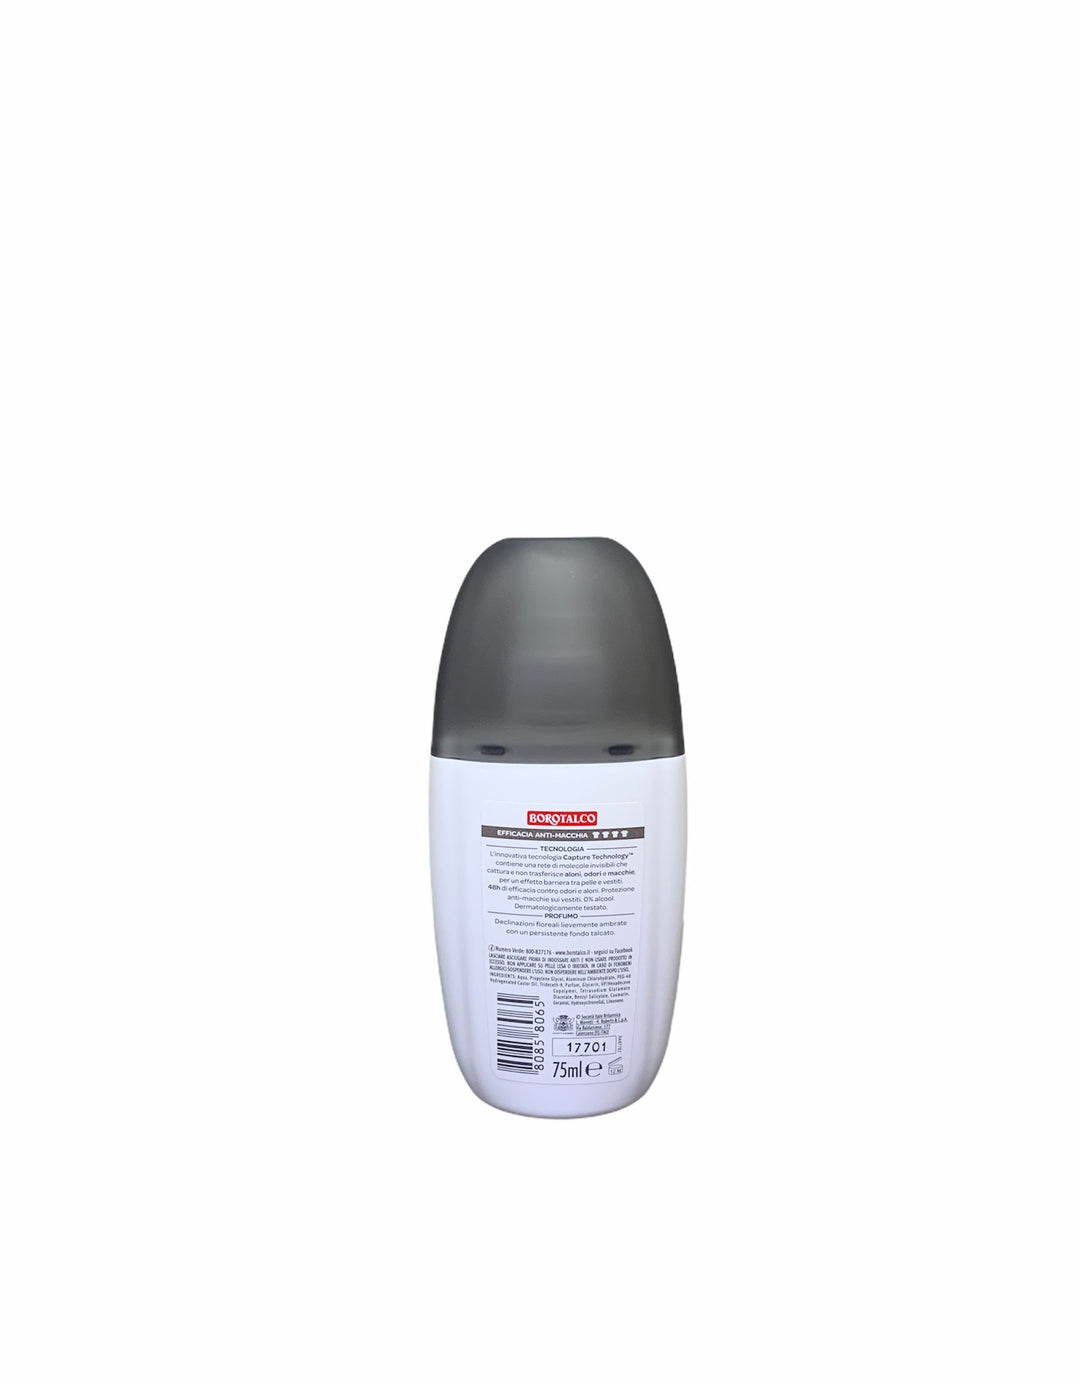 Borotalco deodorante vapo invisible anti macchia 75 ml